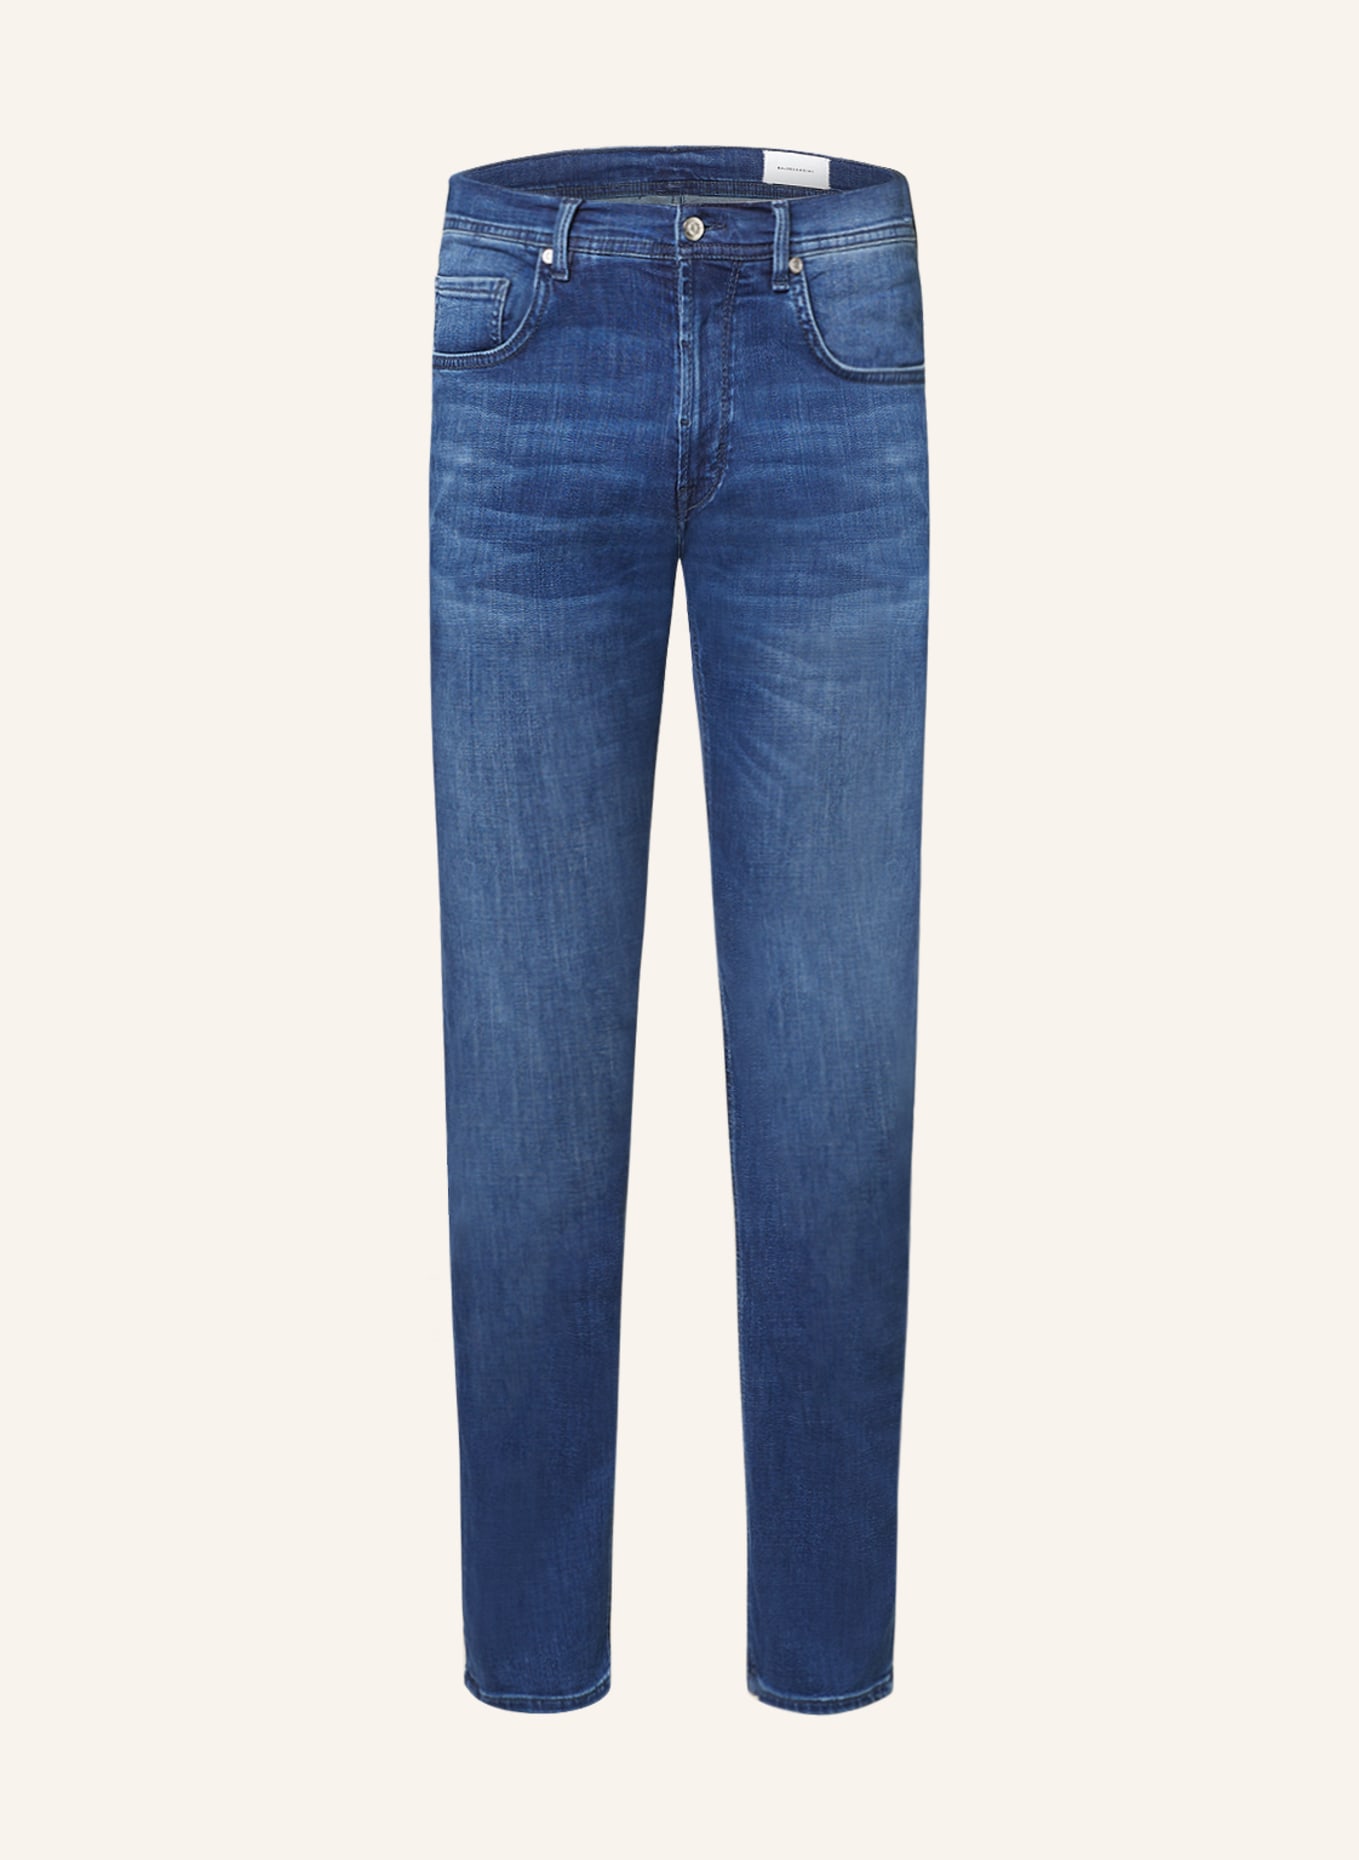 BALDESSARINI Jeans regular fit, Color: 6825 blue used whisker (Image 1)